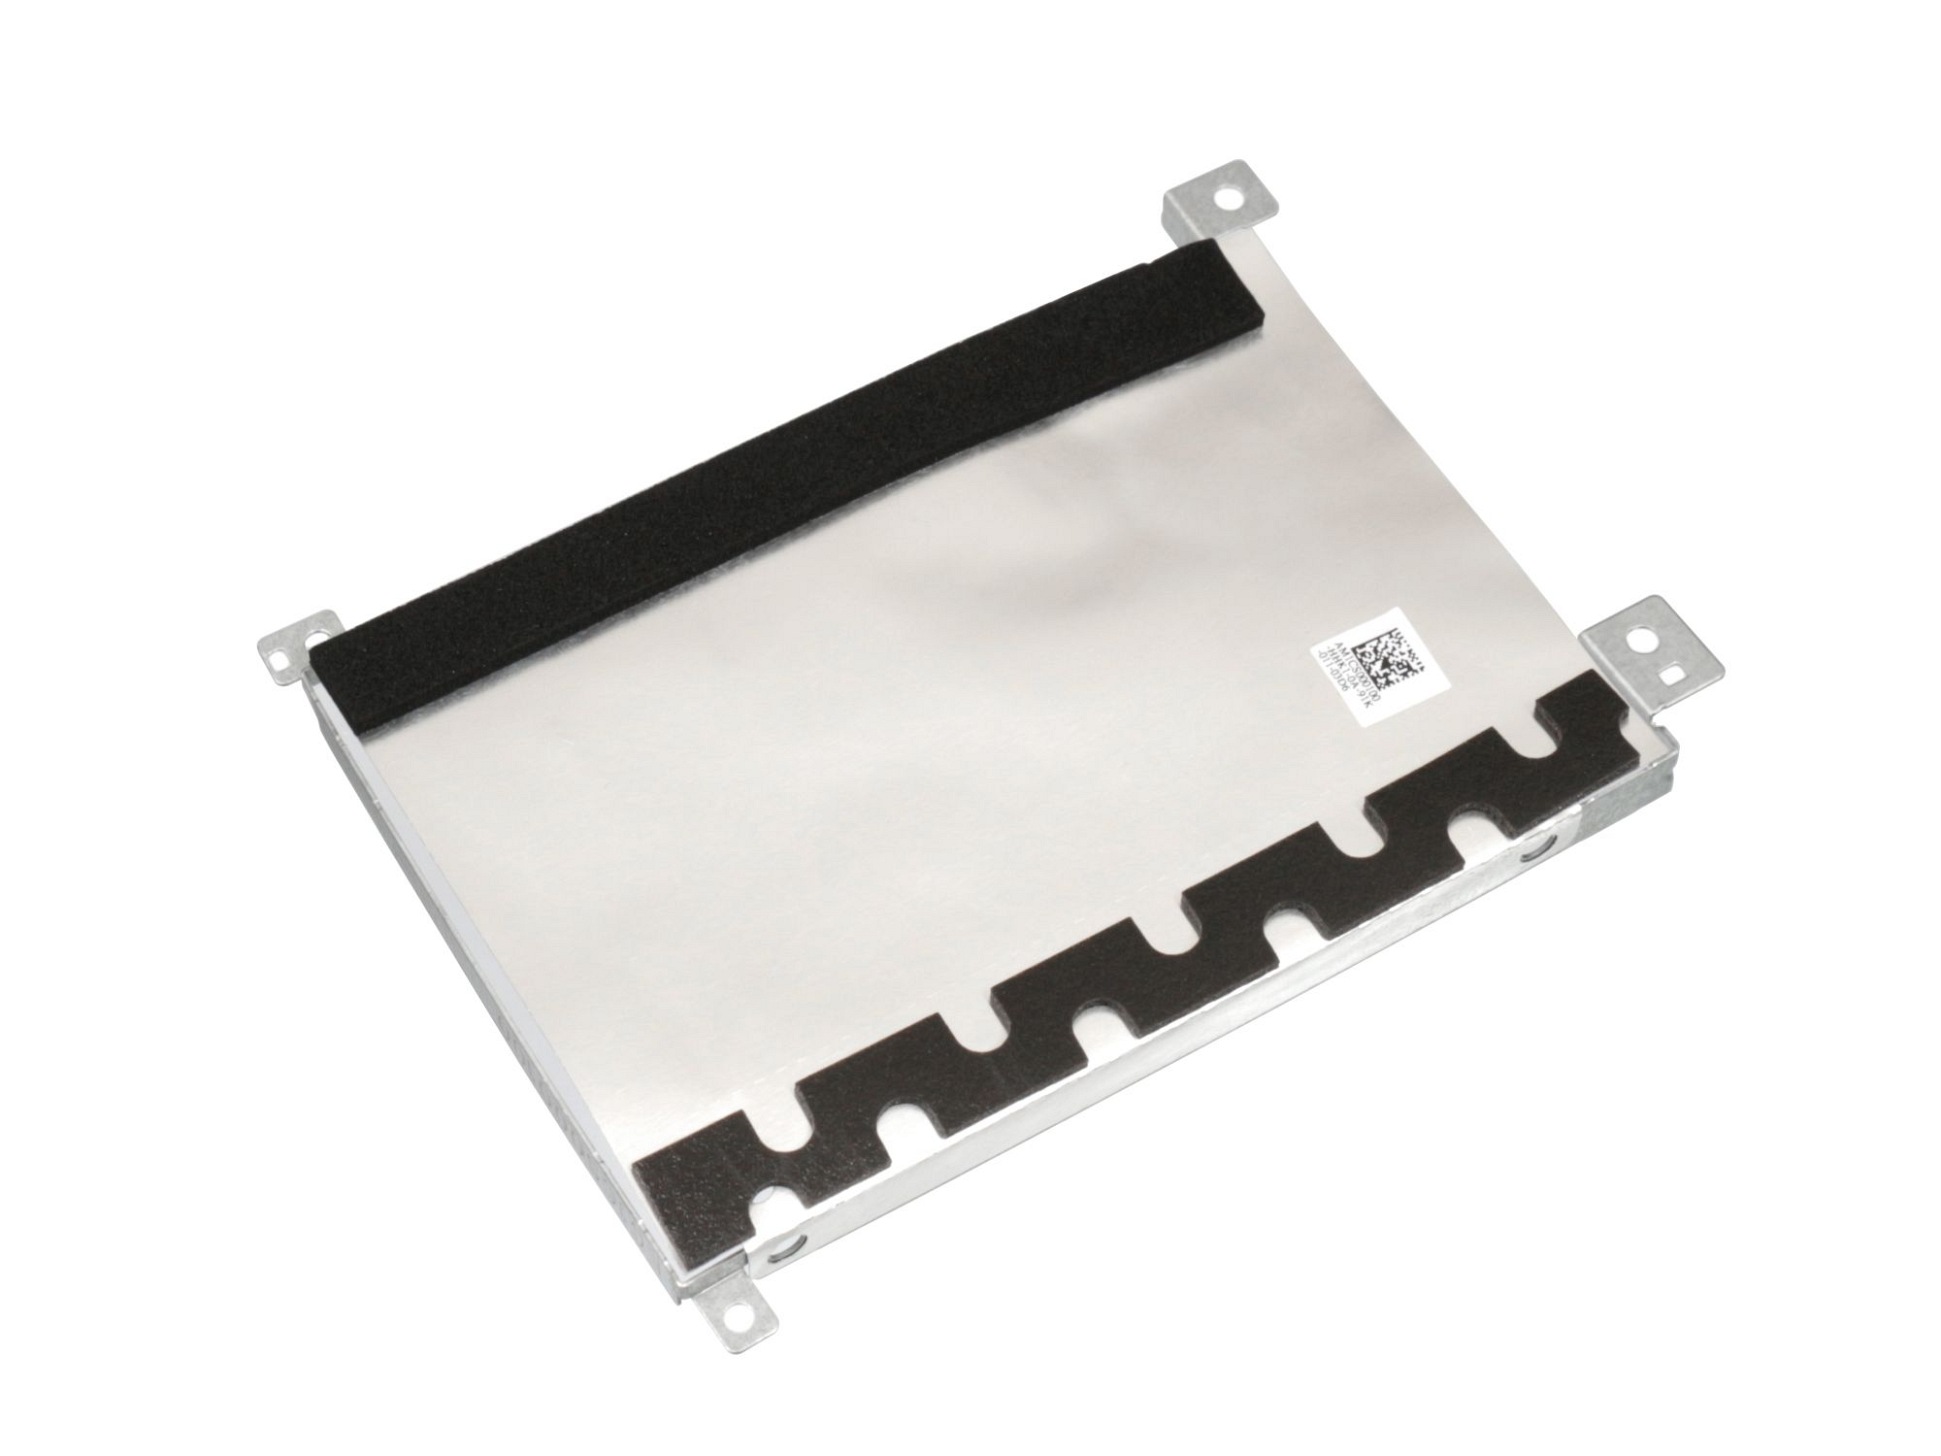 Festplatten-Einbaurahmen für den 1. Festplatten Schacht Original für Lenovo IdeaPad S145-14IWL (81MU)